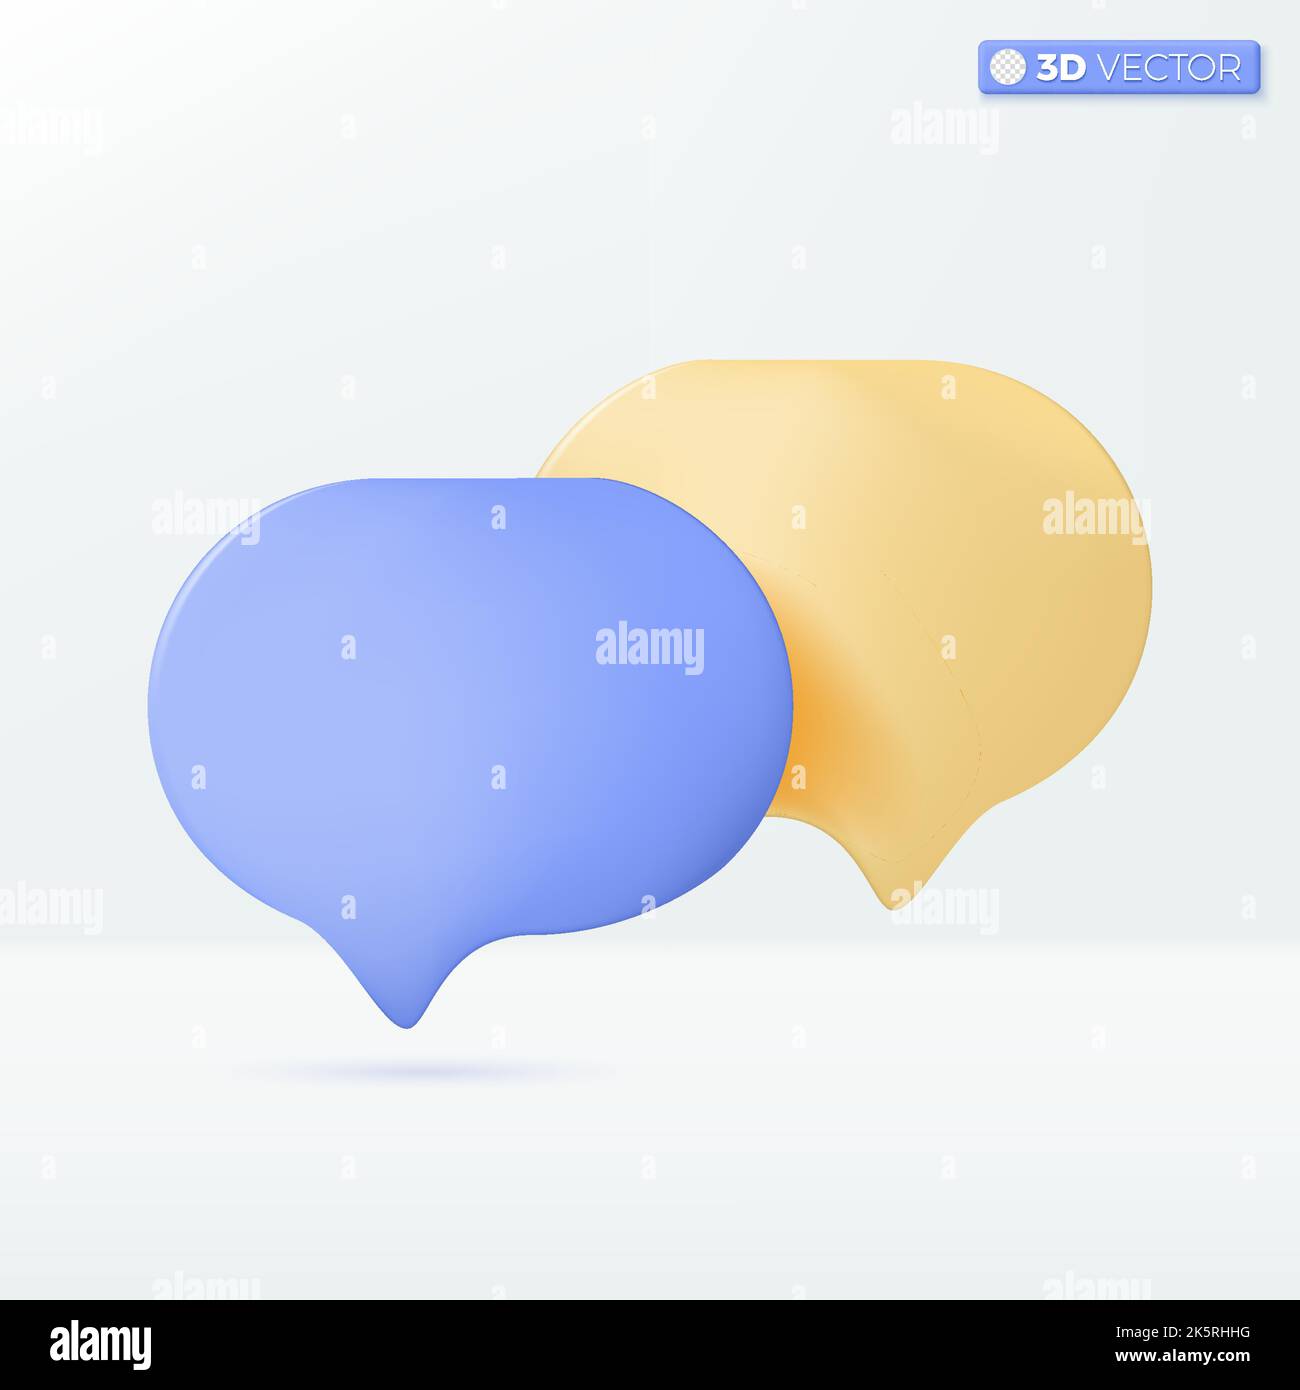 Symboles d'icône de lissage de bulle de dialogue ou de discussion. Concept de chat, message, conversation. 3D illustrations vectorielles isolées. Dessin animé pastel minimal Illustration de Vecteur